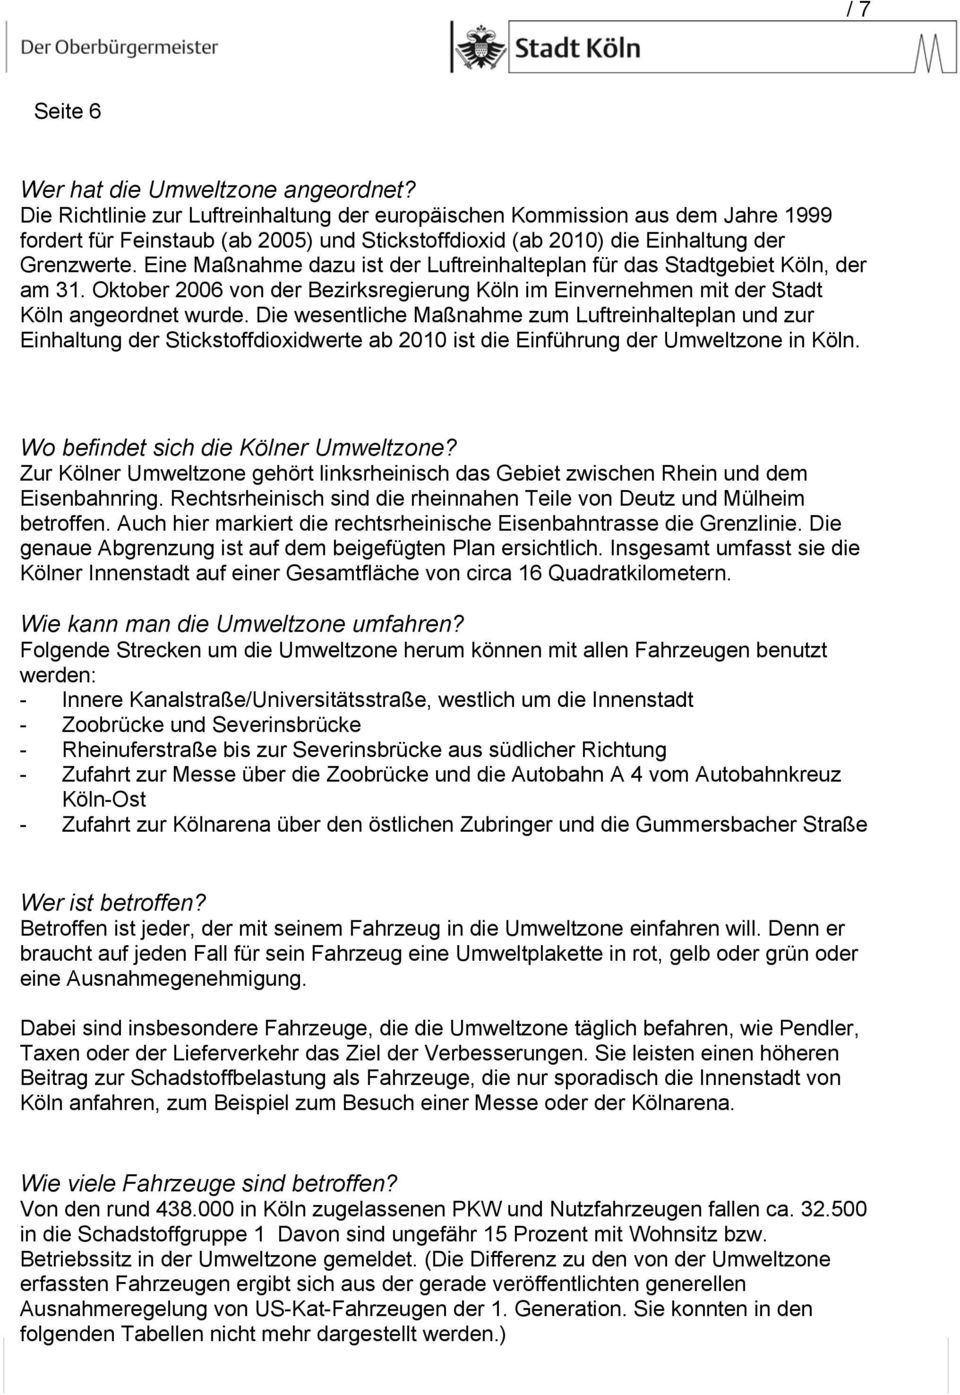 Eine Maßnahme dazu ist der Luftreinhalteplan für das Stadtgebiet Köln, der am 31. Oktober 2006 von der Bezirksregierung Köln im Einvernehmen mit der Stadt Köln angeordnet wurde.